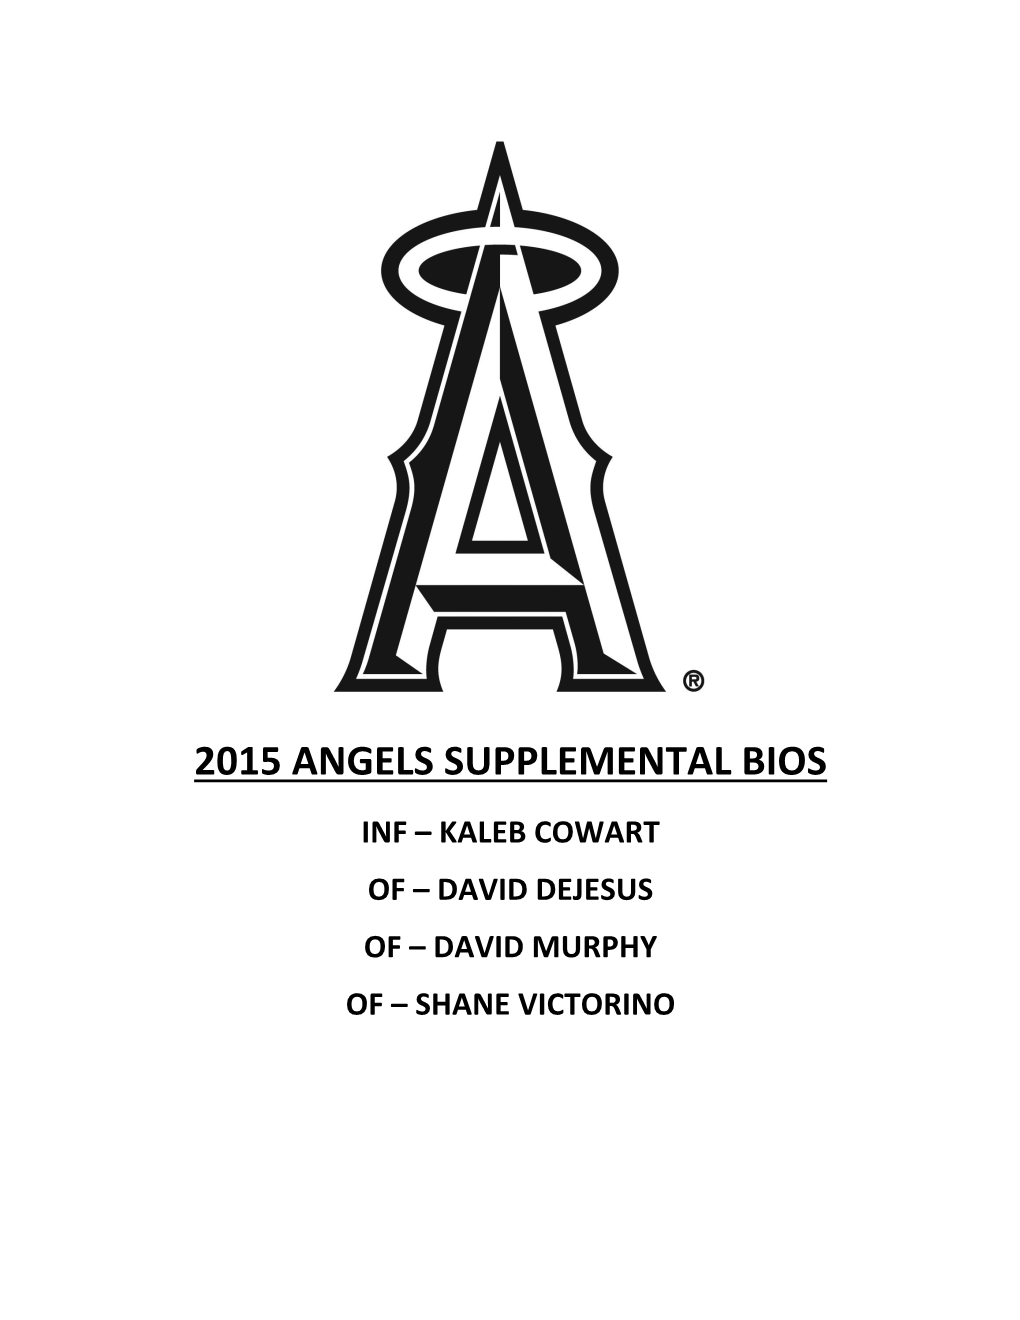 2015 Angels Supplemental Bios Inf – Kaleb Cowart of – David Dejesus of – David Murphy of – Shane Victorino